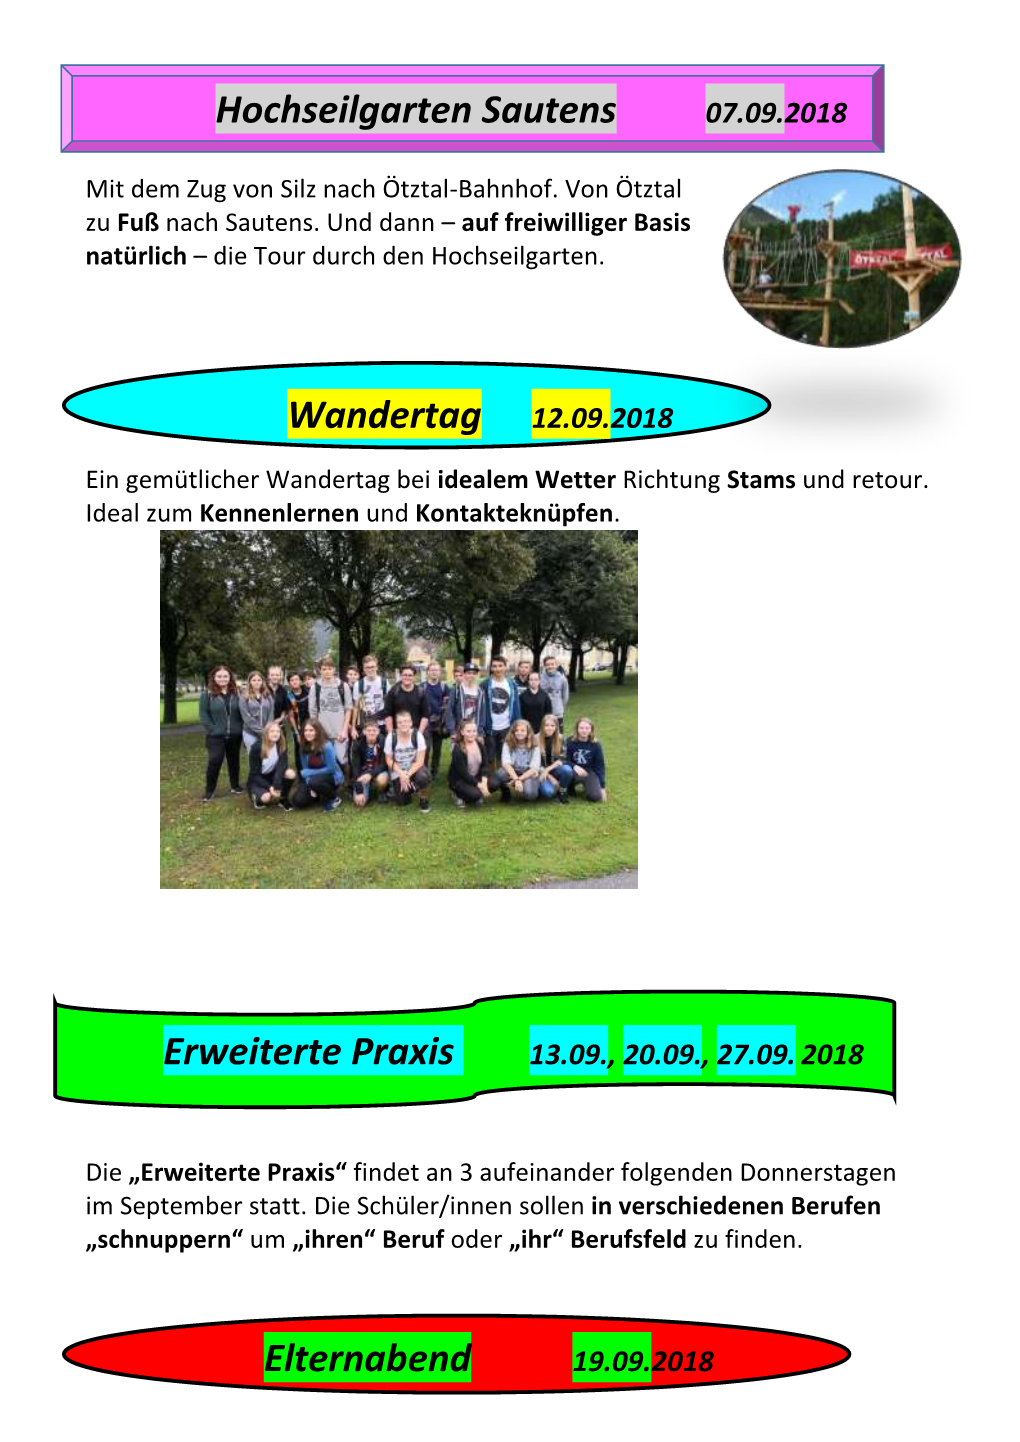 Hochseilgarten Sautens Wandertag 12.09.2018 Erweiterte Praxis Elternabend